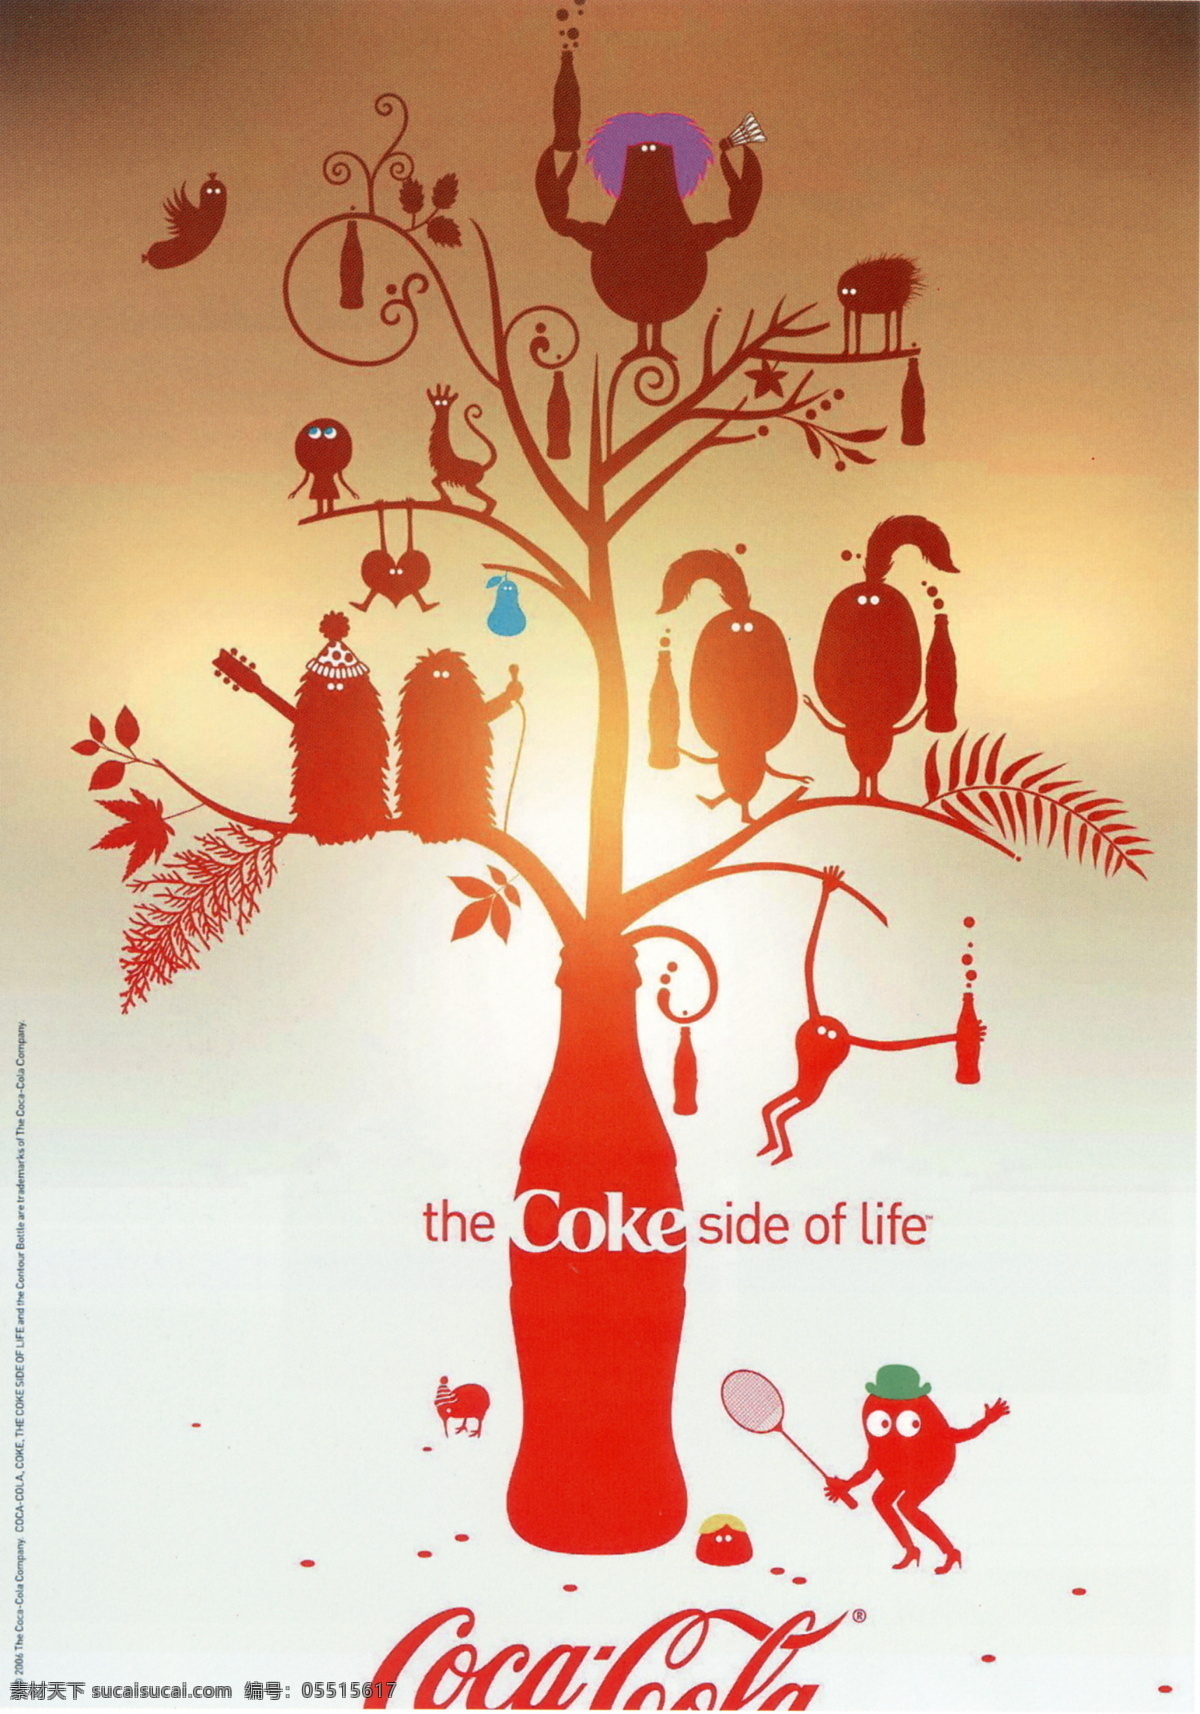 阿姆斯特丹 可口可乐 可口 生活 系列 设计素材 食品餐饮 平面创意 平面设计 白色